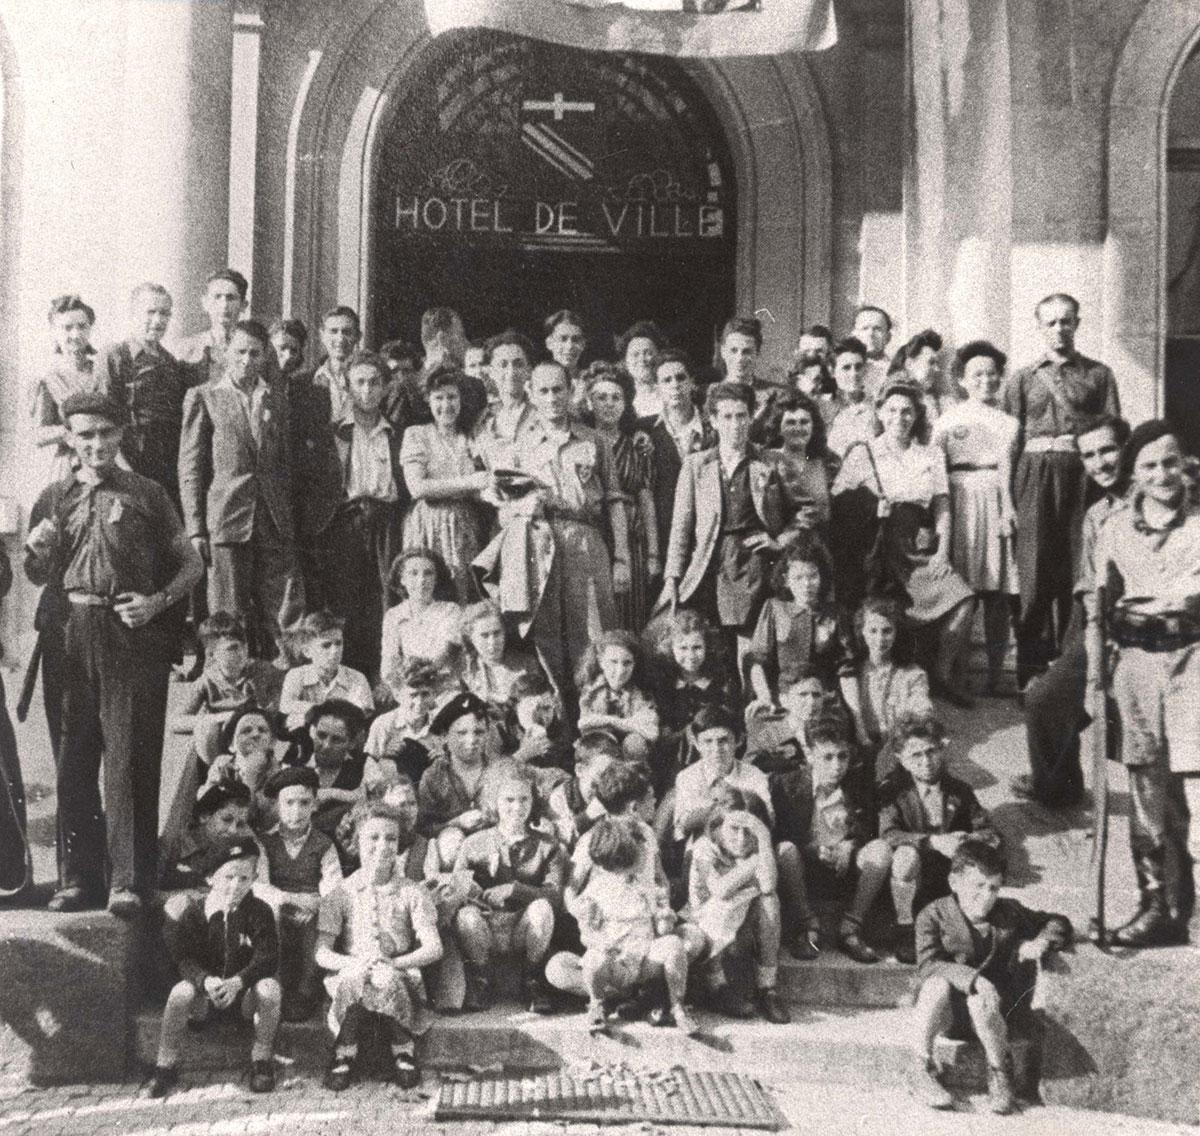 Grupo de niños que sobrevivieron gracias a Marianne Cohn y Mila Racine, Annemasse, Francia 18.8.1944